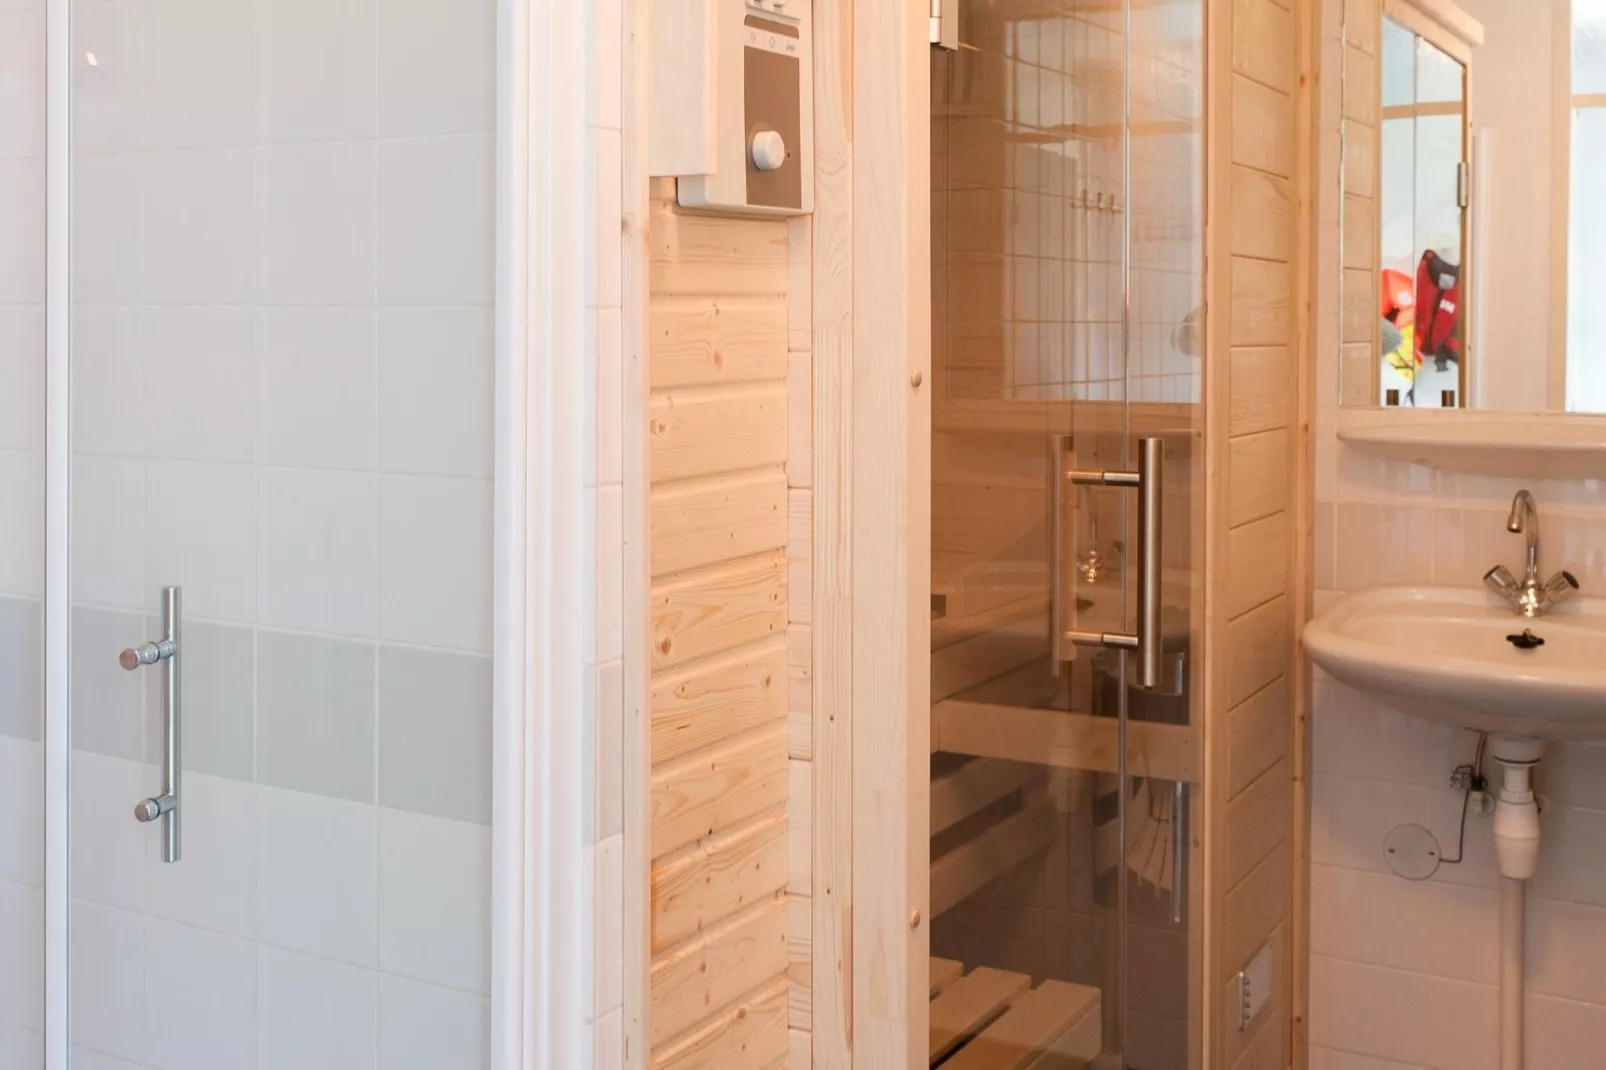 Grand Tolve Wellness de luxe met sauna buitenspa en sloep-Wellness